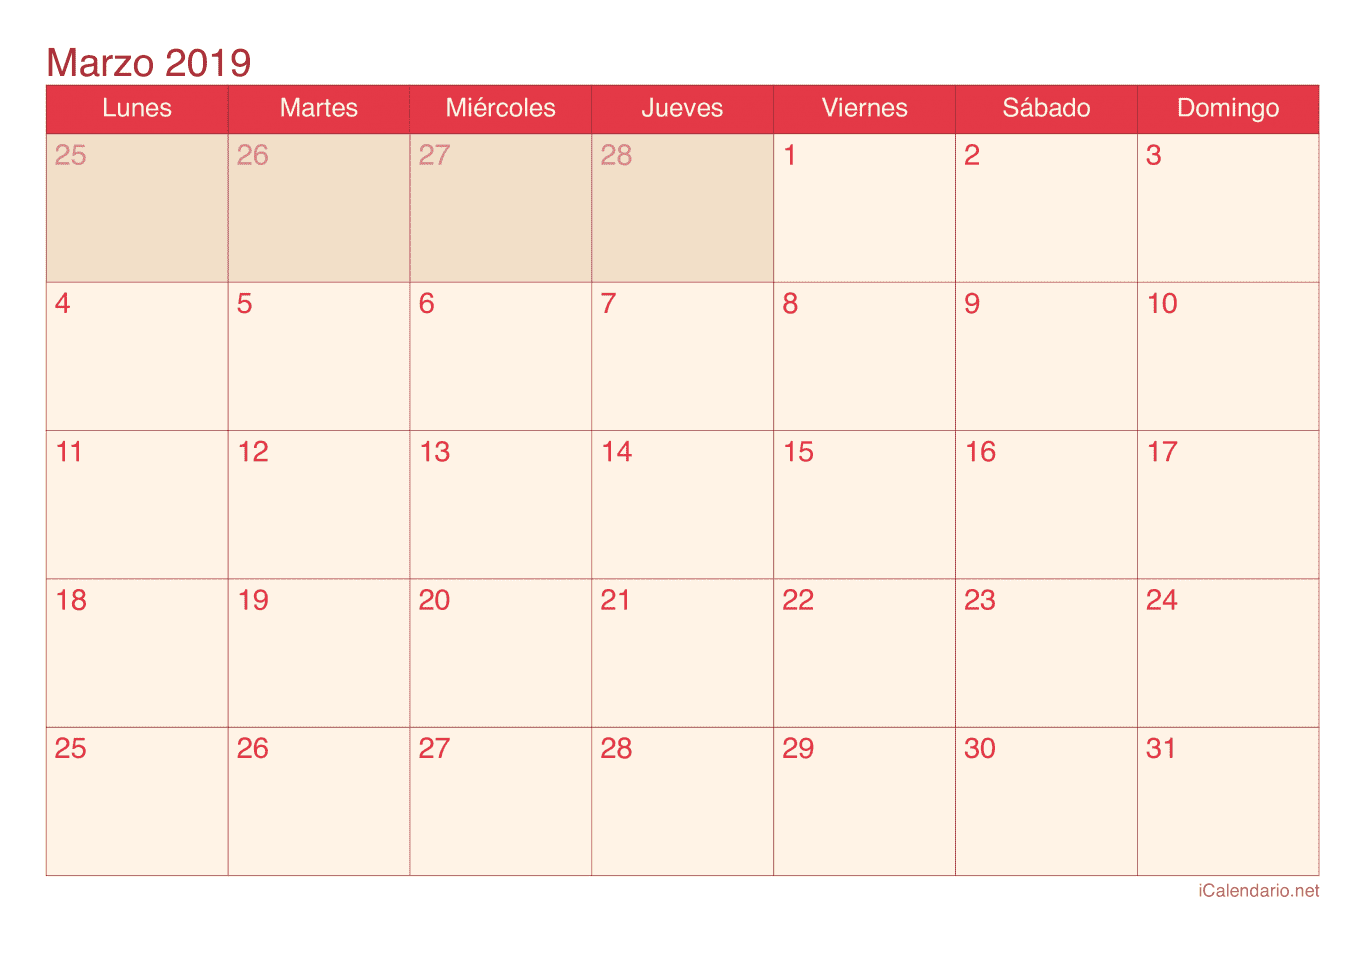 Calendario de marzo 2019 - Cherry